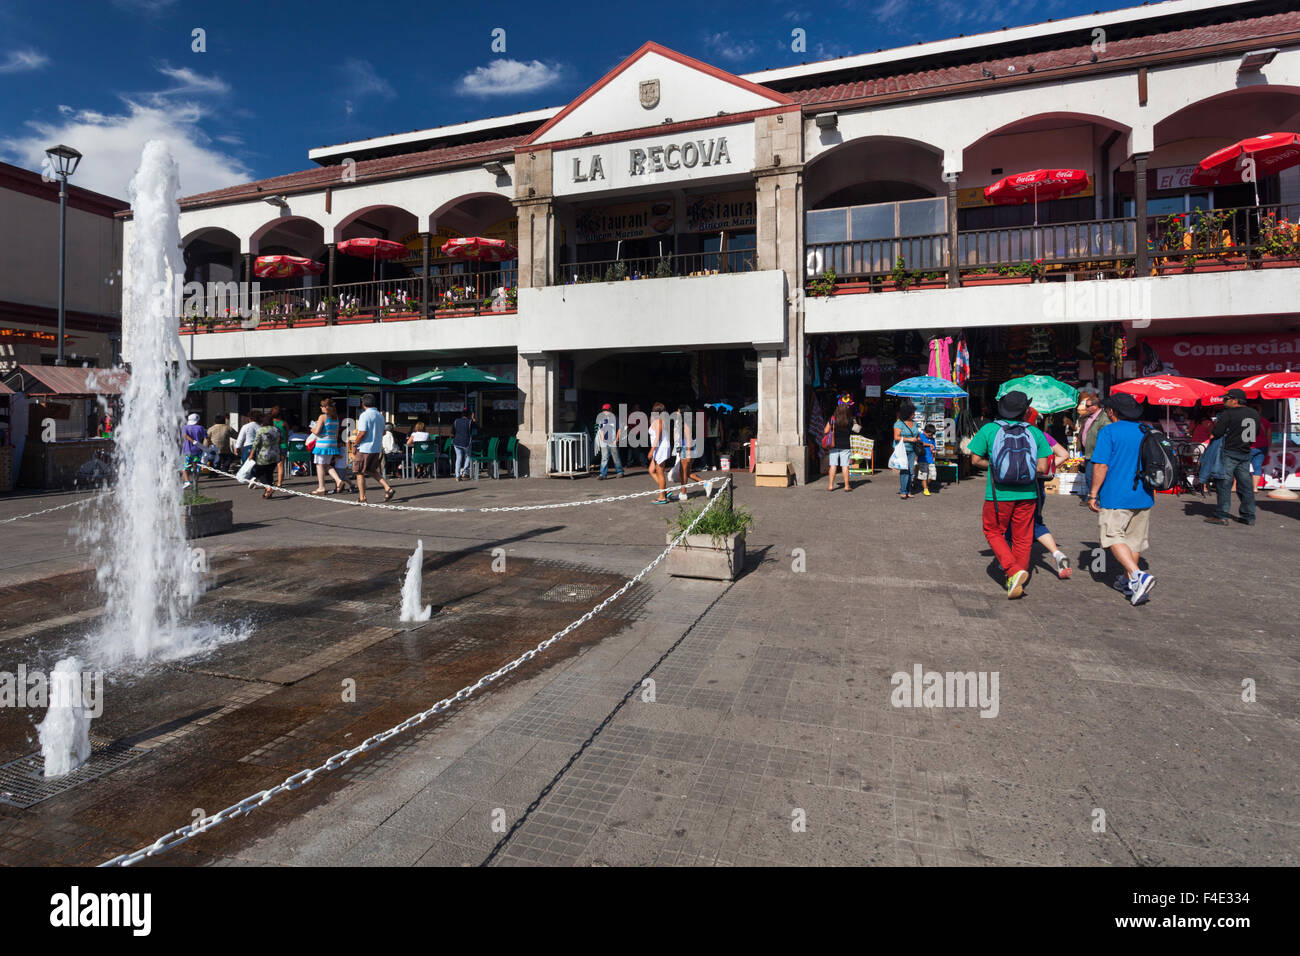 Chile, La Serena, La Recova market, exterior. Stock Photo